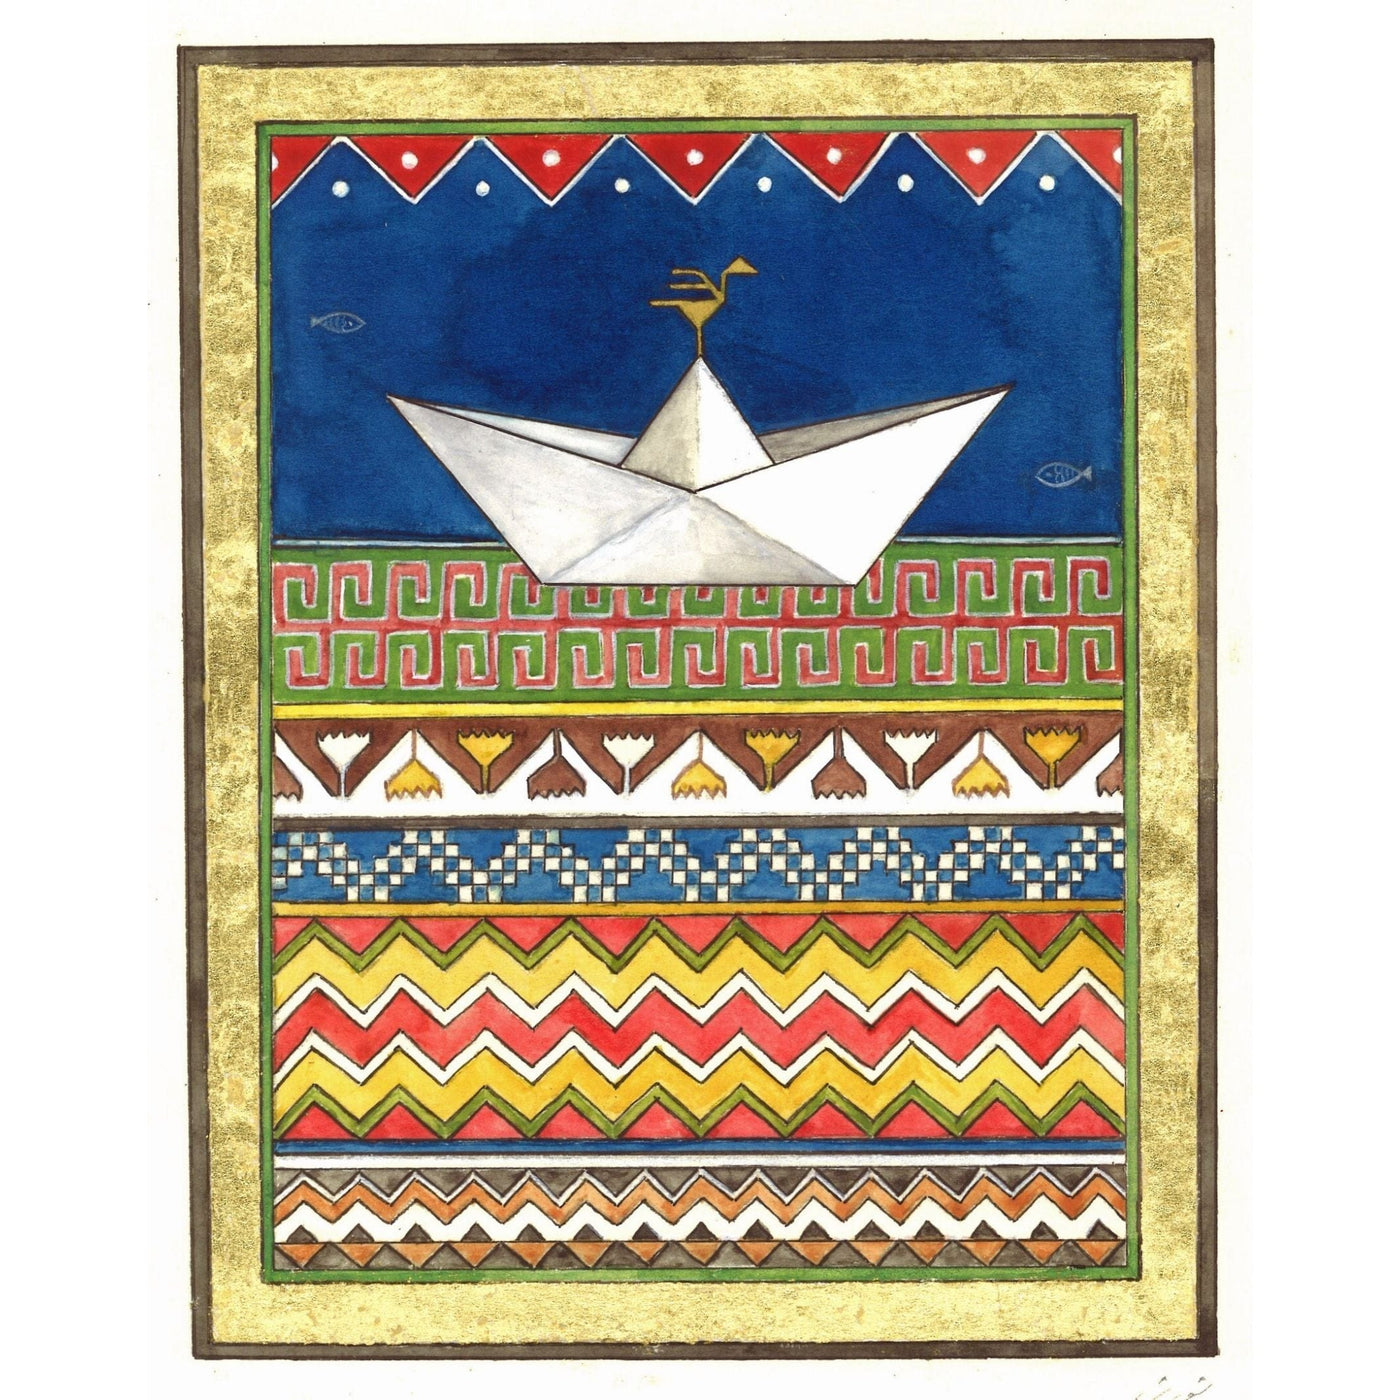 Print - Migration by Shorsh Saleh - 15 x 20cm - Migration Museum Shop